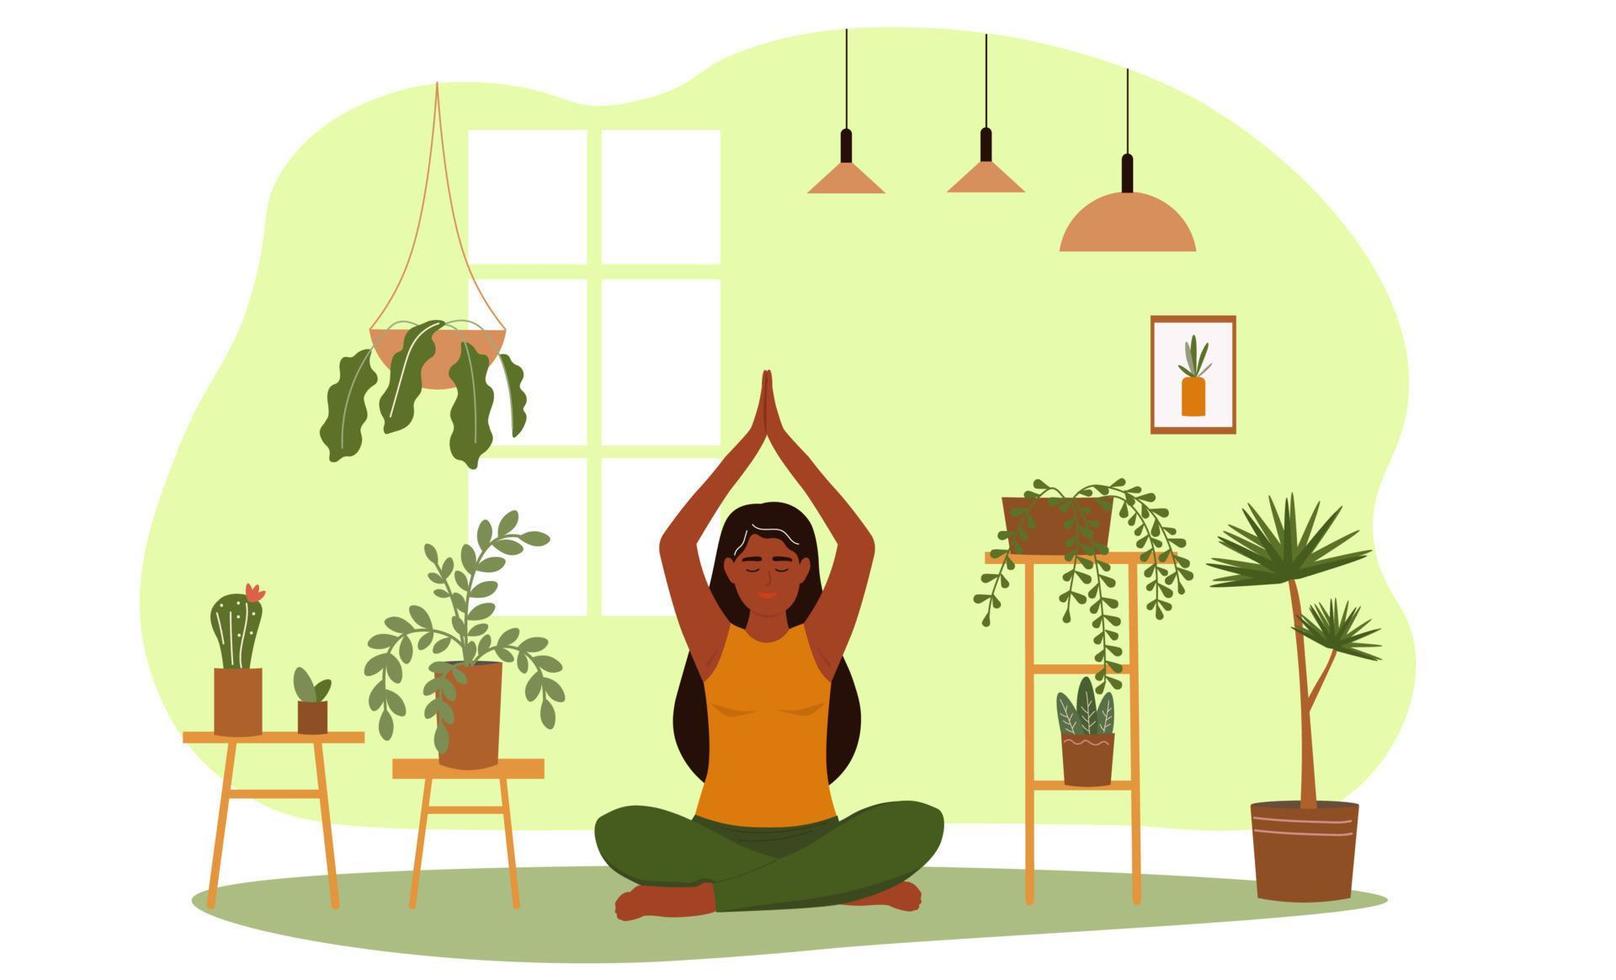 das Mädchen sitzt im ein Lotus Position, erhöht ihr Hände oben über ihr Kopf. Frau tun Asana Yoga, führt ein gesund Lebensstil unter Pflanzen. Vektor Grafik.